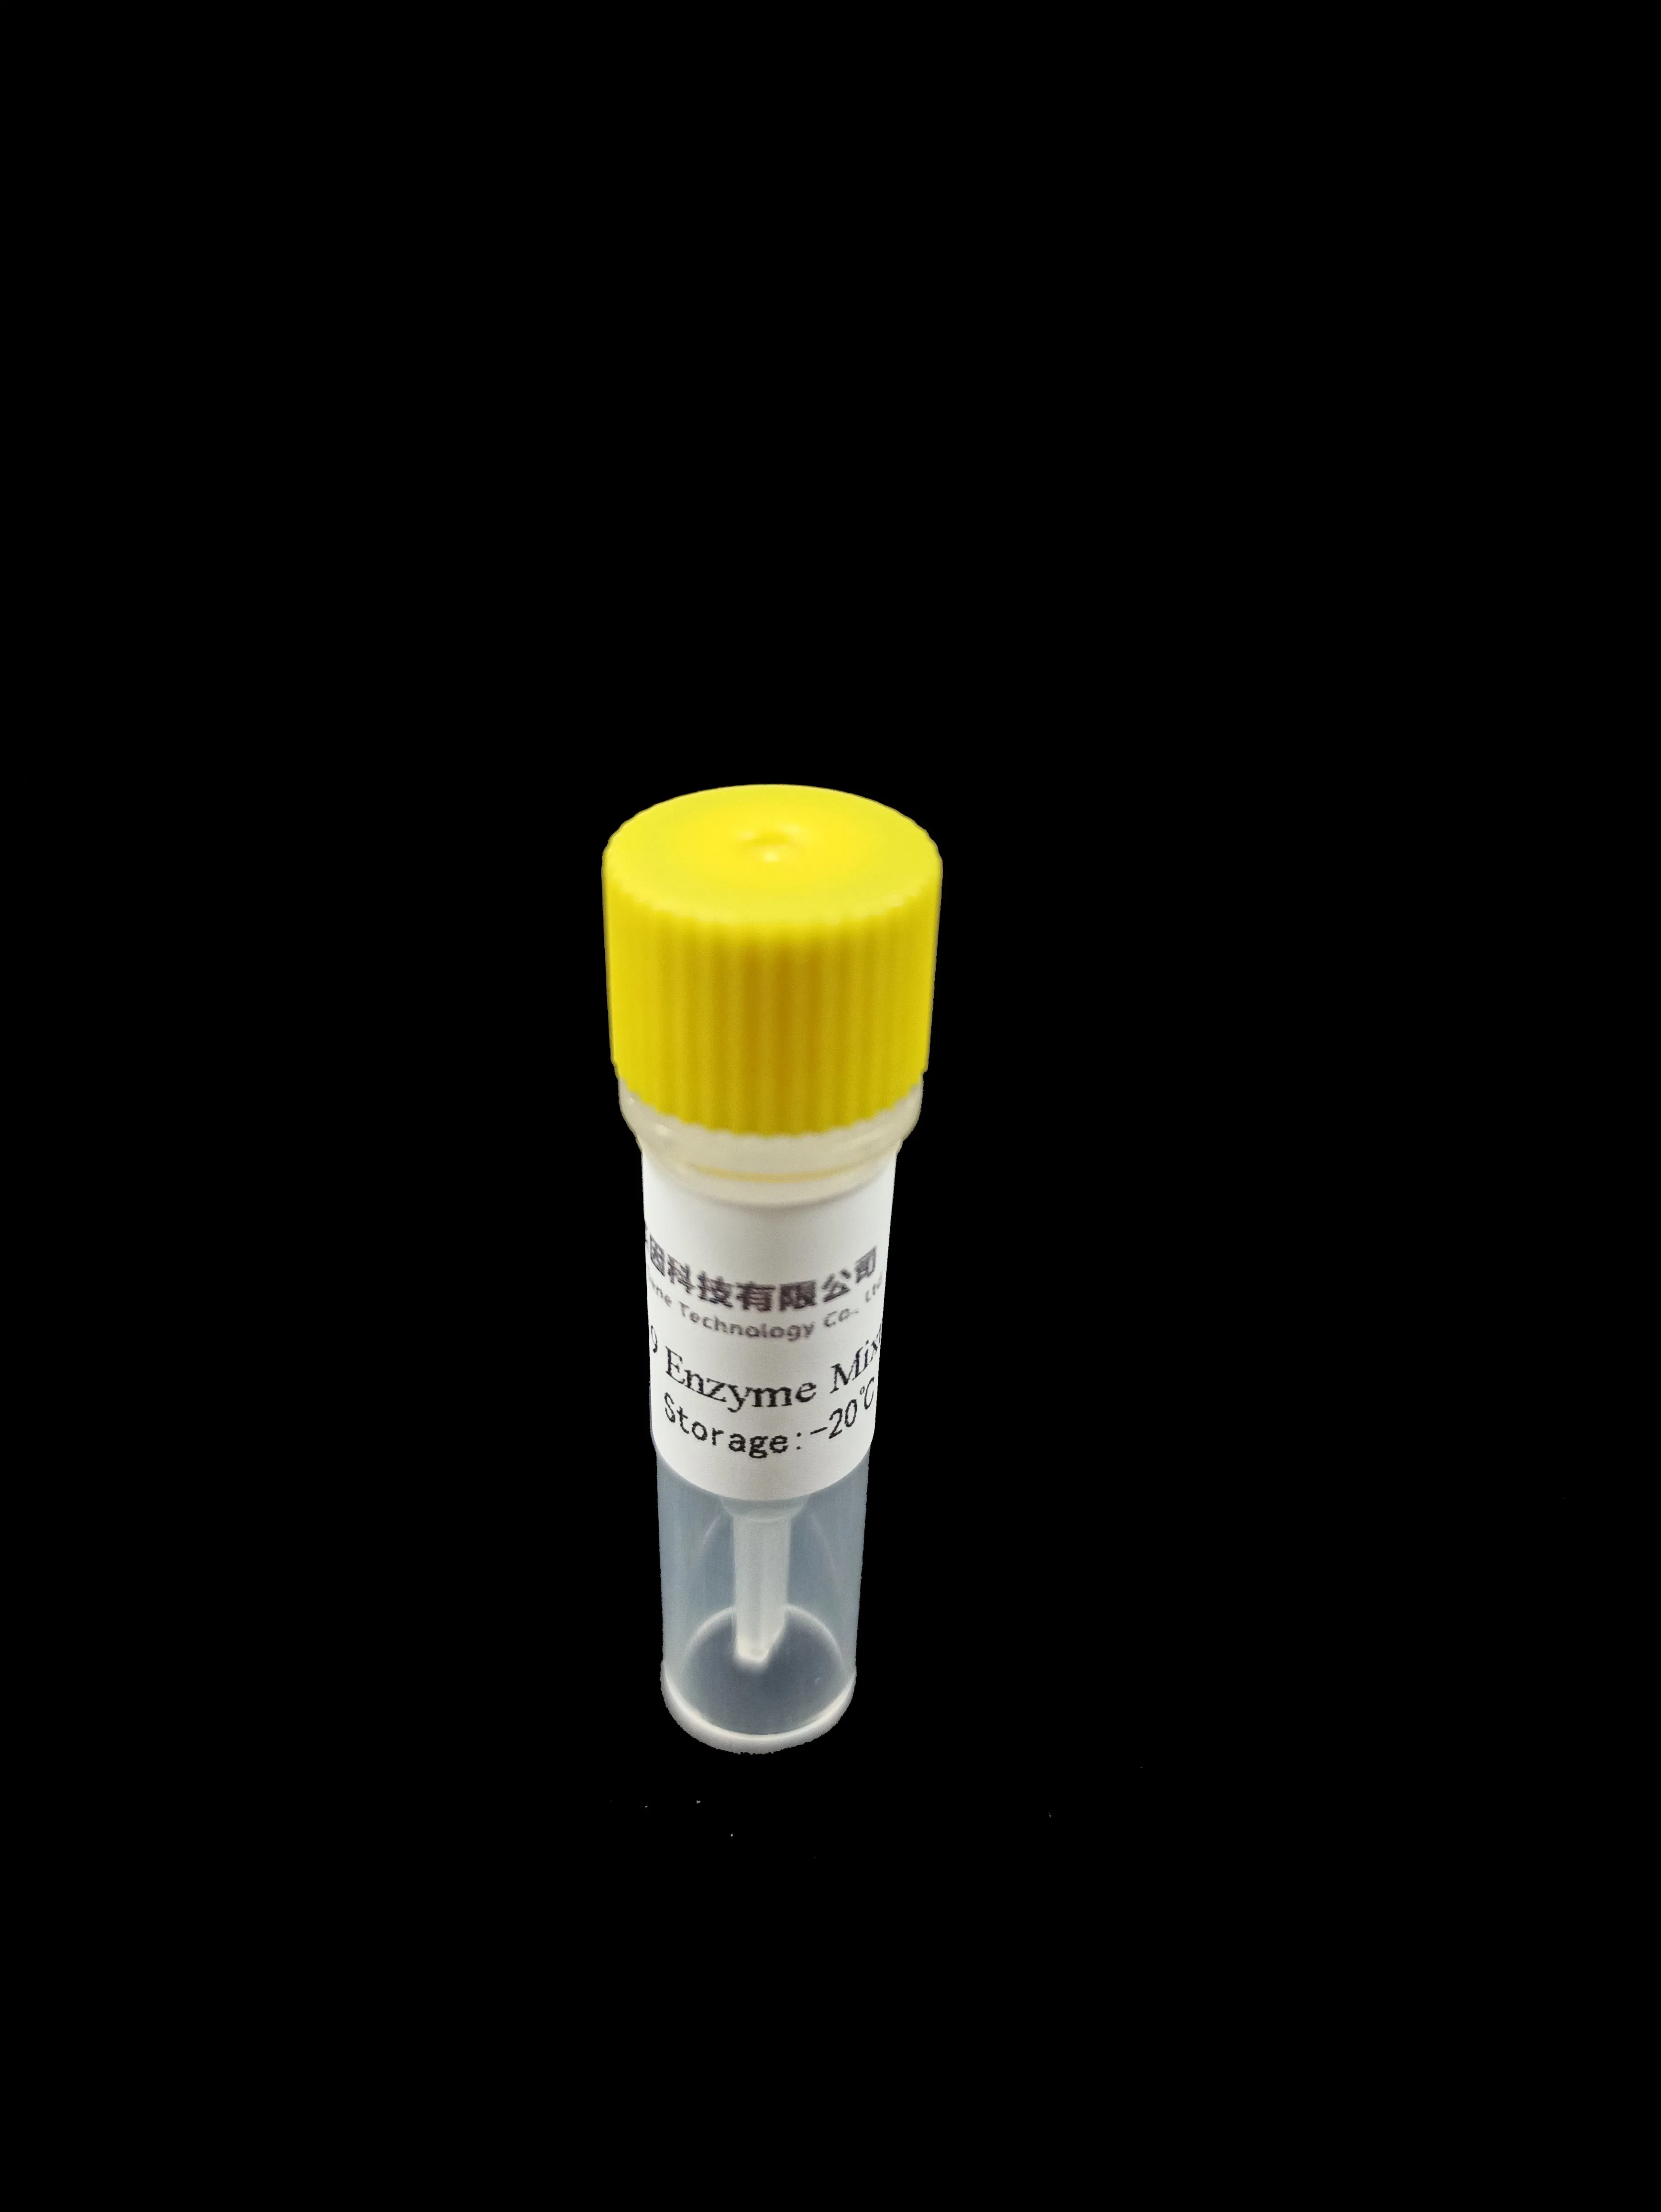 Medizinischer Bedarf PCR-Prüfungs-Installationssatz, medizinischer Produkte PCR-Extraktion-Installationssatz, Nukleinsäure-schnelle Prüfung PCR-Prüfungs-Maschine mit PCR-Prüfung